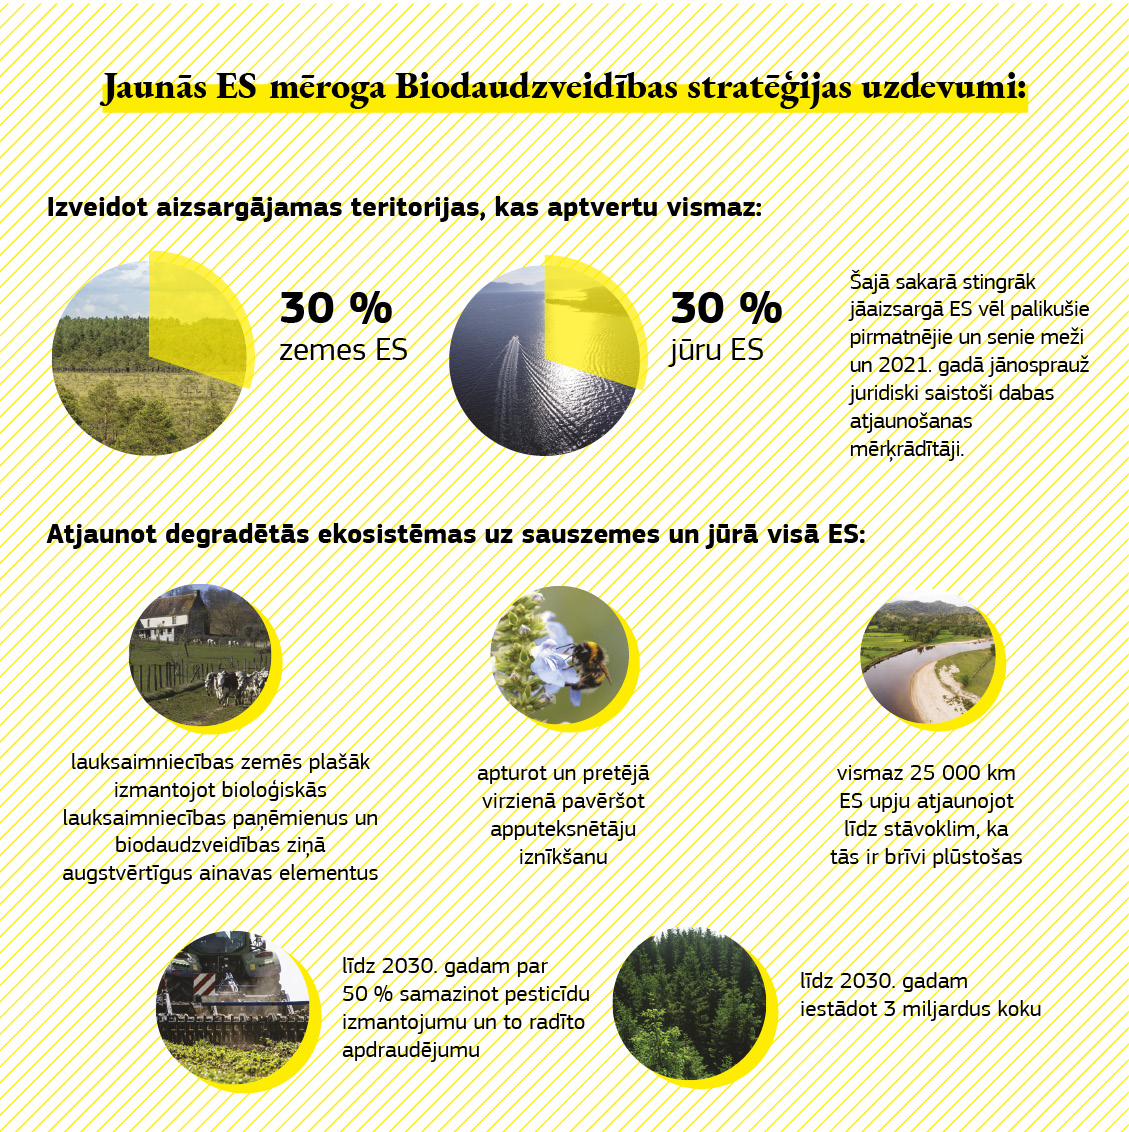 Infografika, kurā parādīts, ko panāks ar Biodaudzveidības stratēģiju.